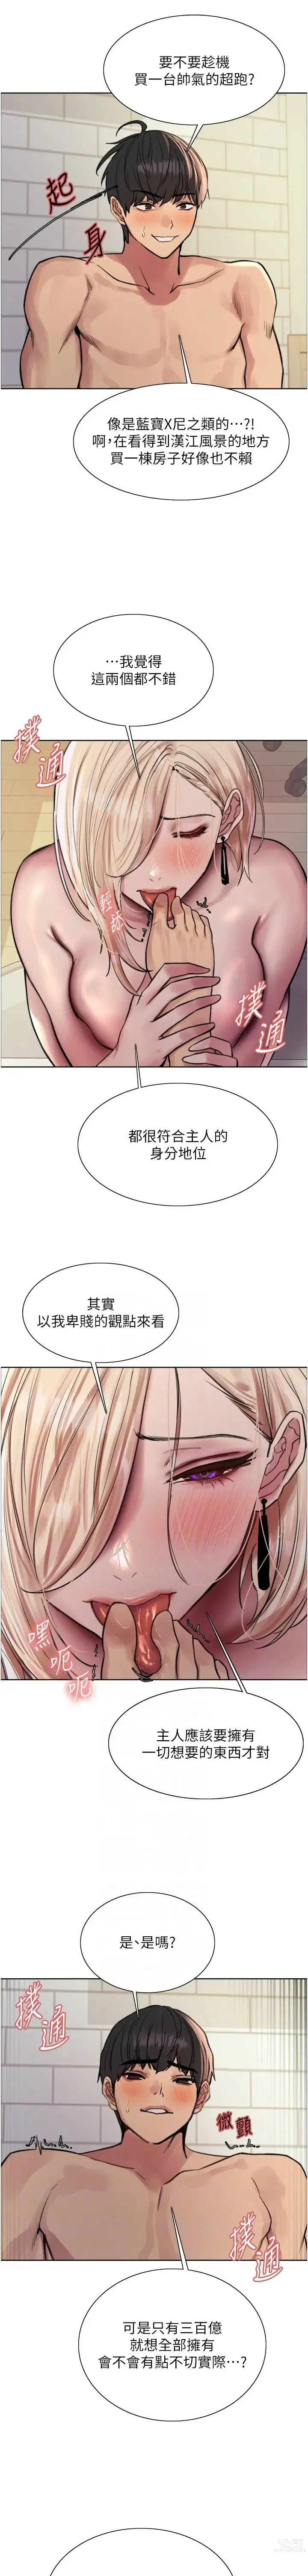 Page 1725 of manga 色轮眼/ Sex Stopwatch